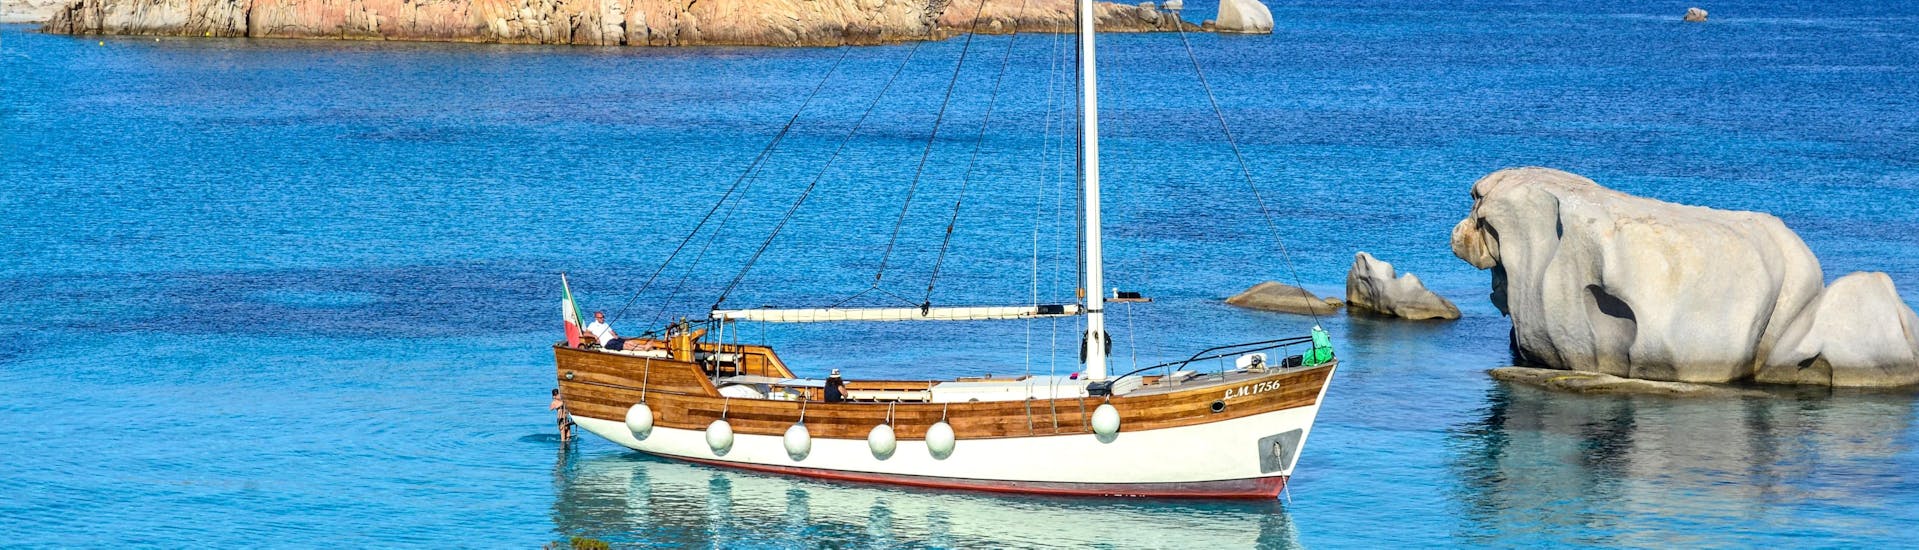 Das Segelboot von Maggior Leggero Tour ankert während einer semi-privaten Segeltour zum La Maddalena Archipel in einer Bucht.